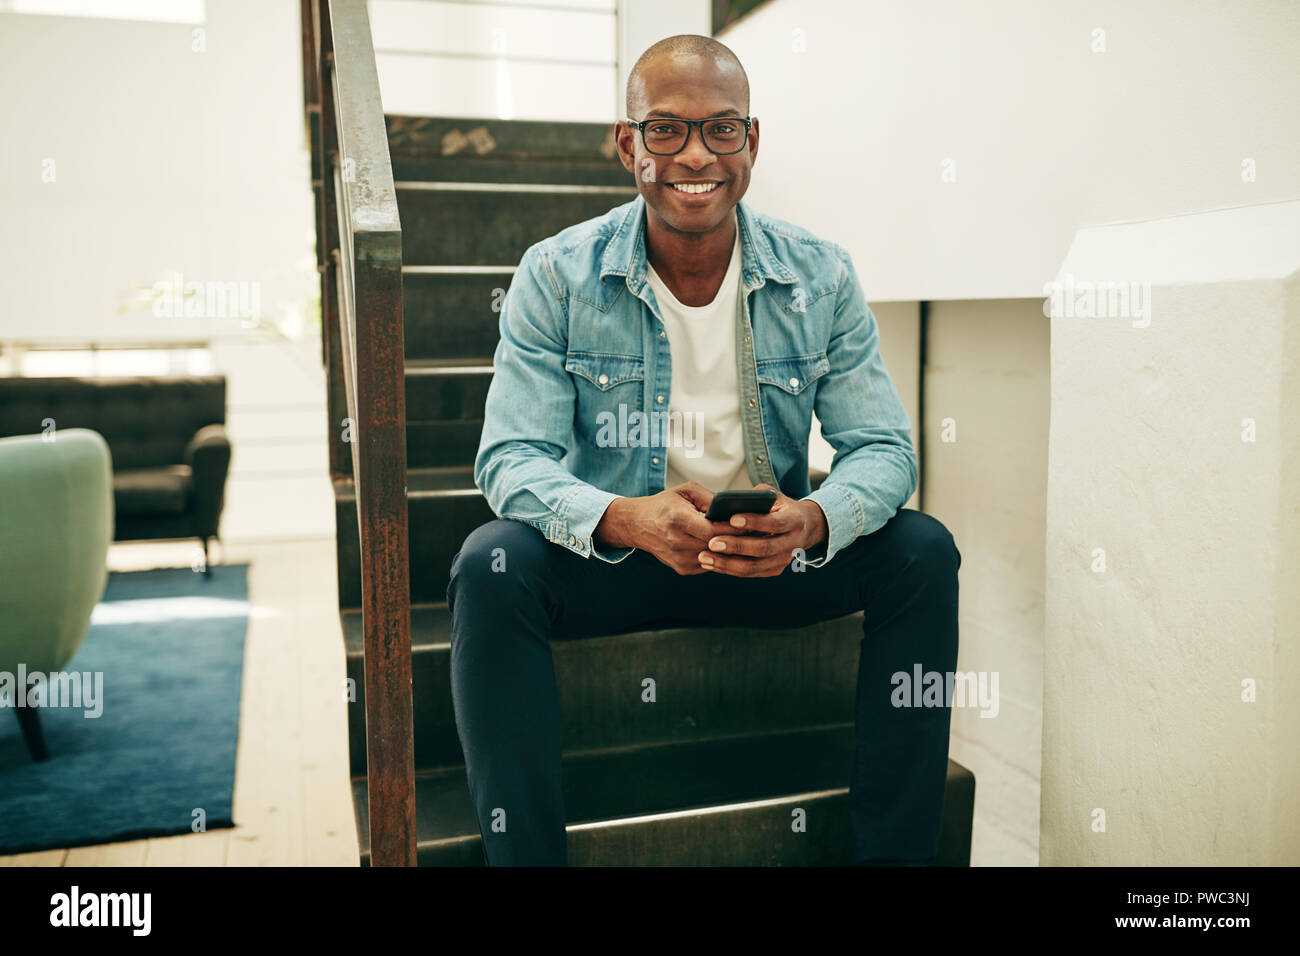 Sonriente joven empresario africano gafas sentado en las escaleras de una oficina leer mensajes de texto en un teléfono móvil Foto de stock